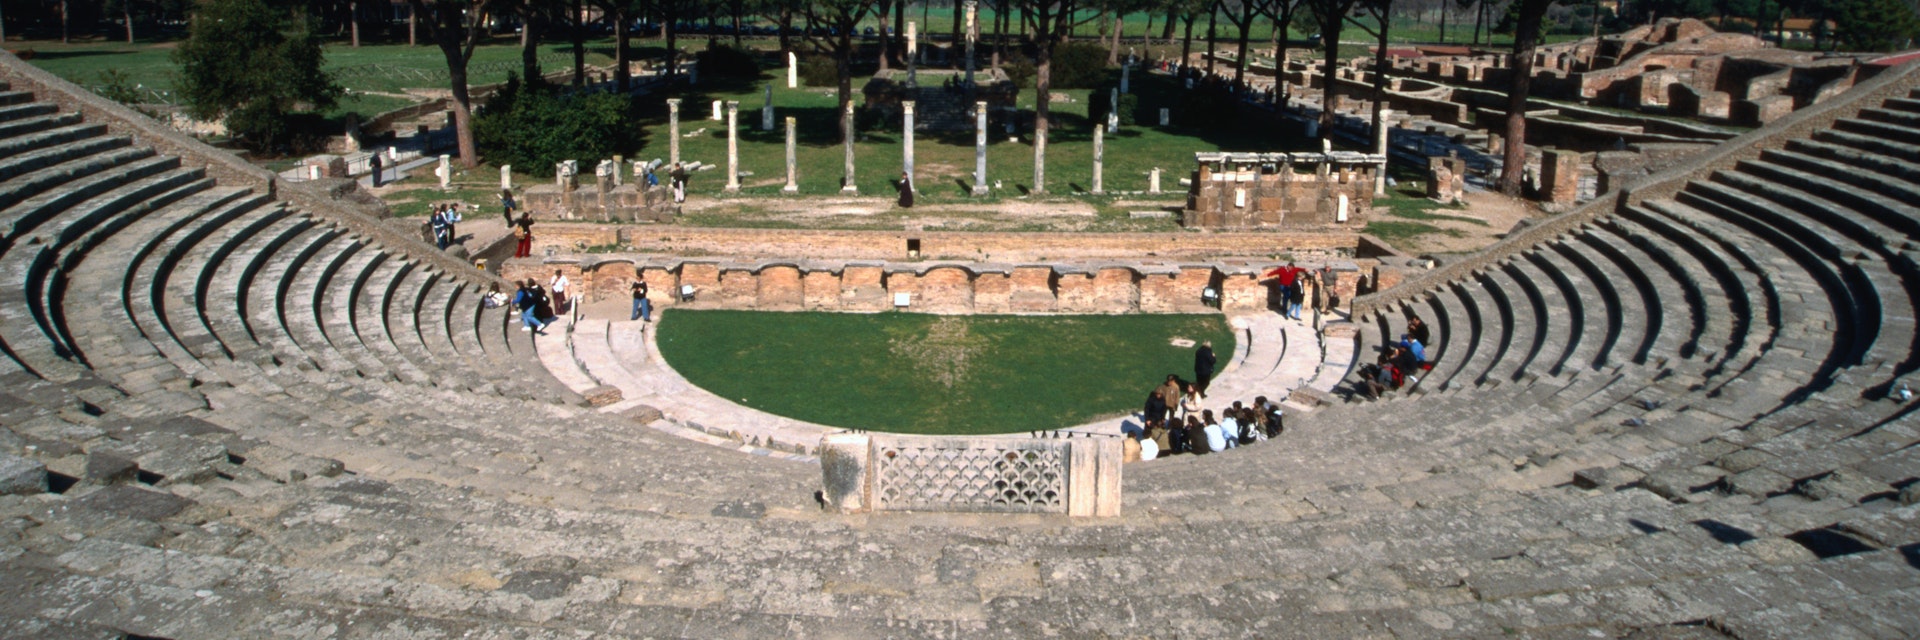 Roman theatre at Ostia Antica.